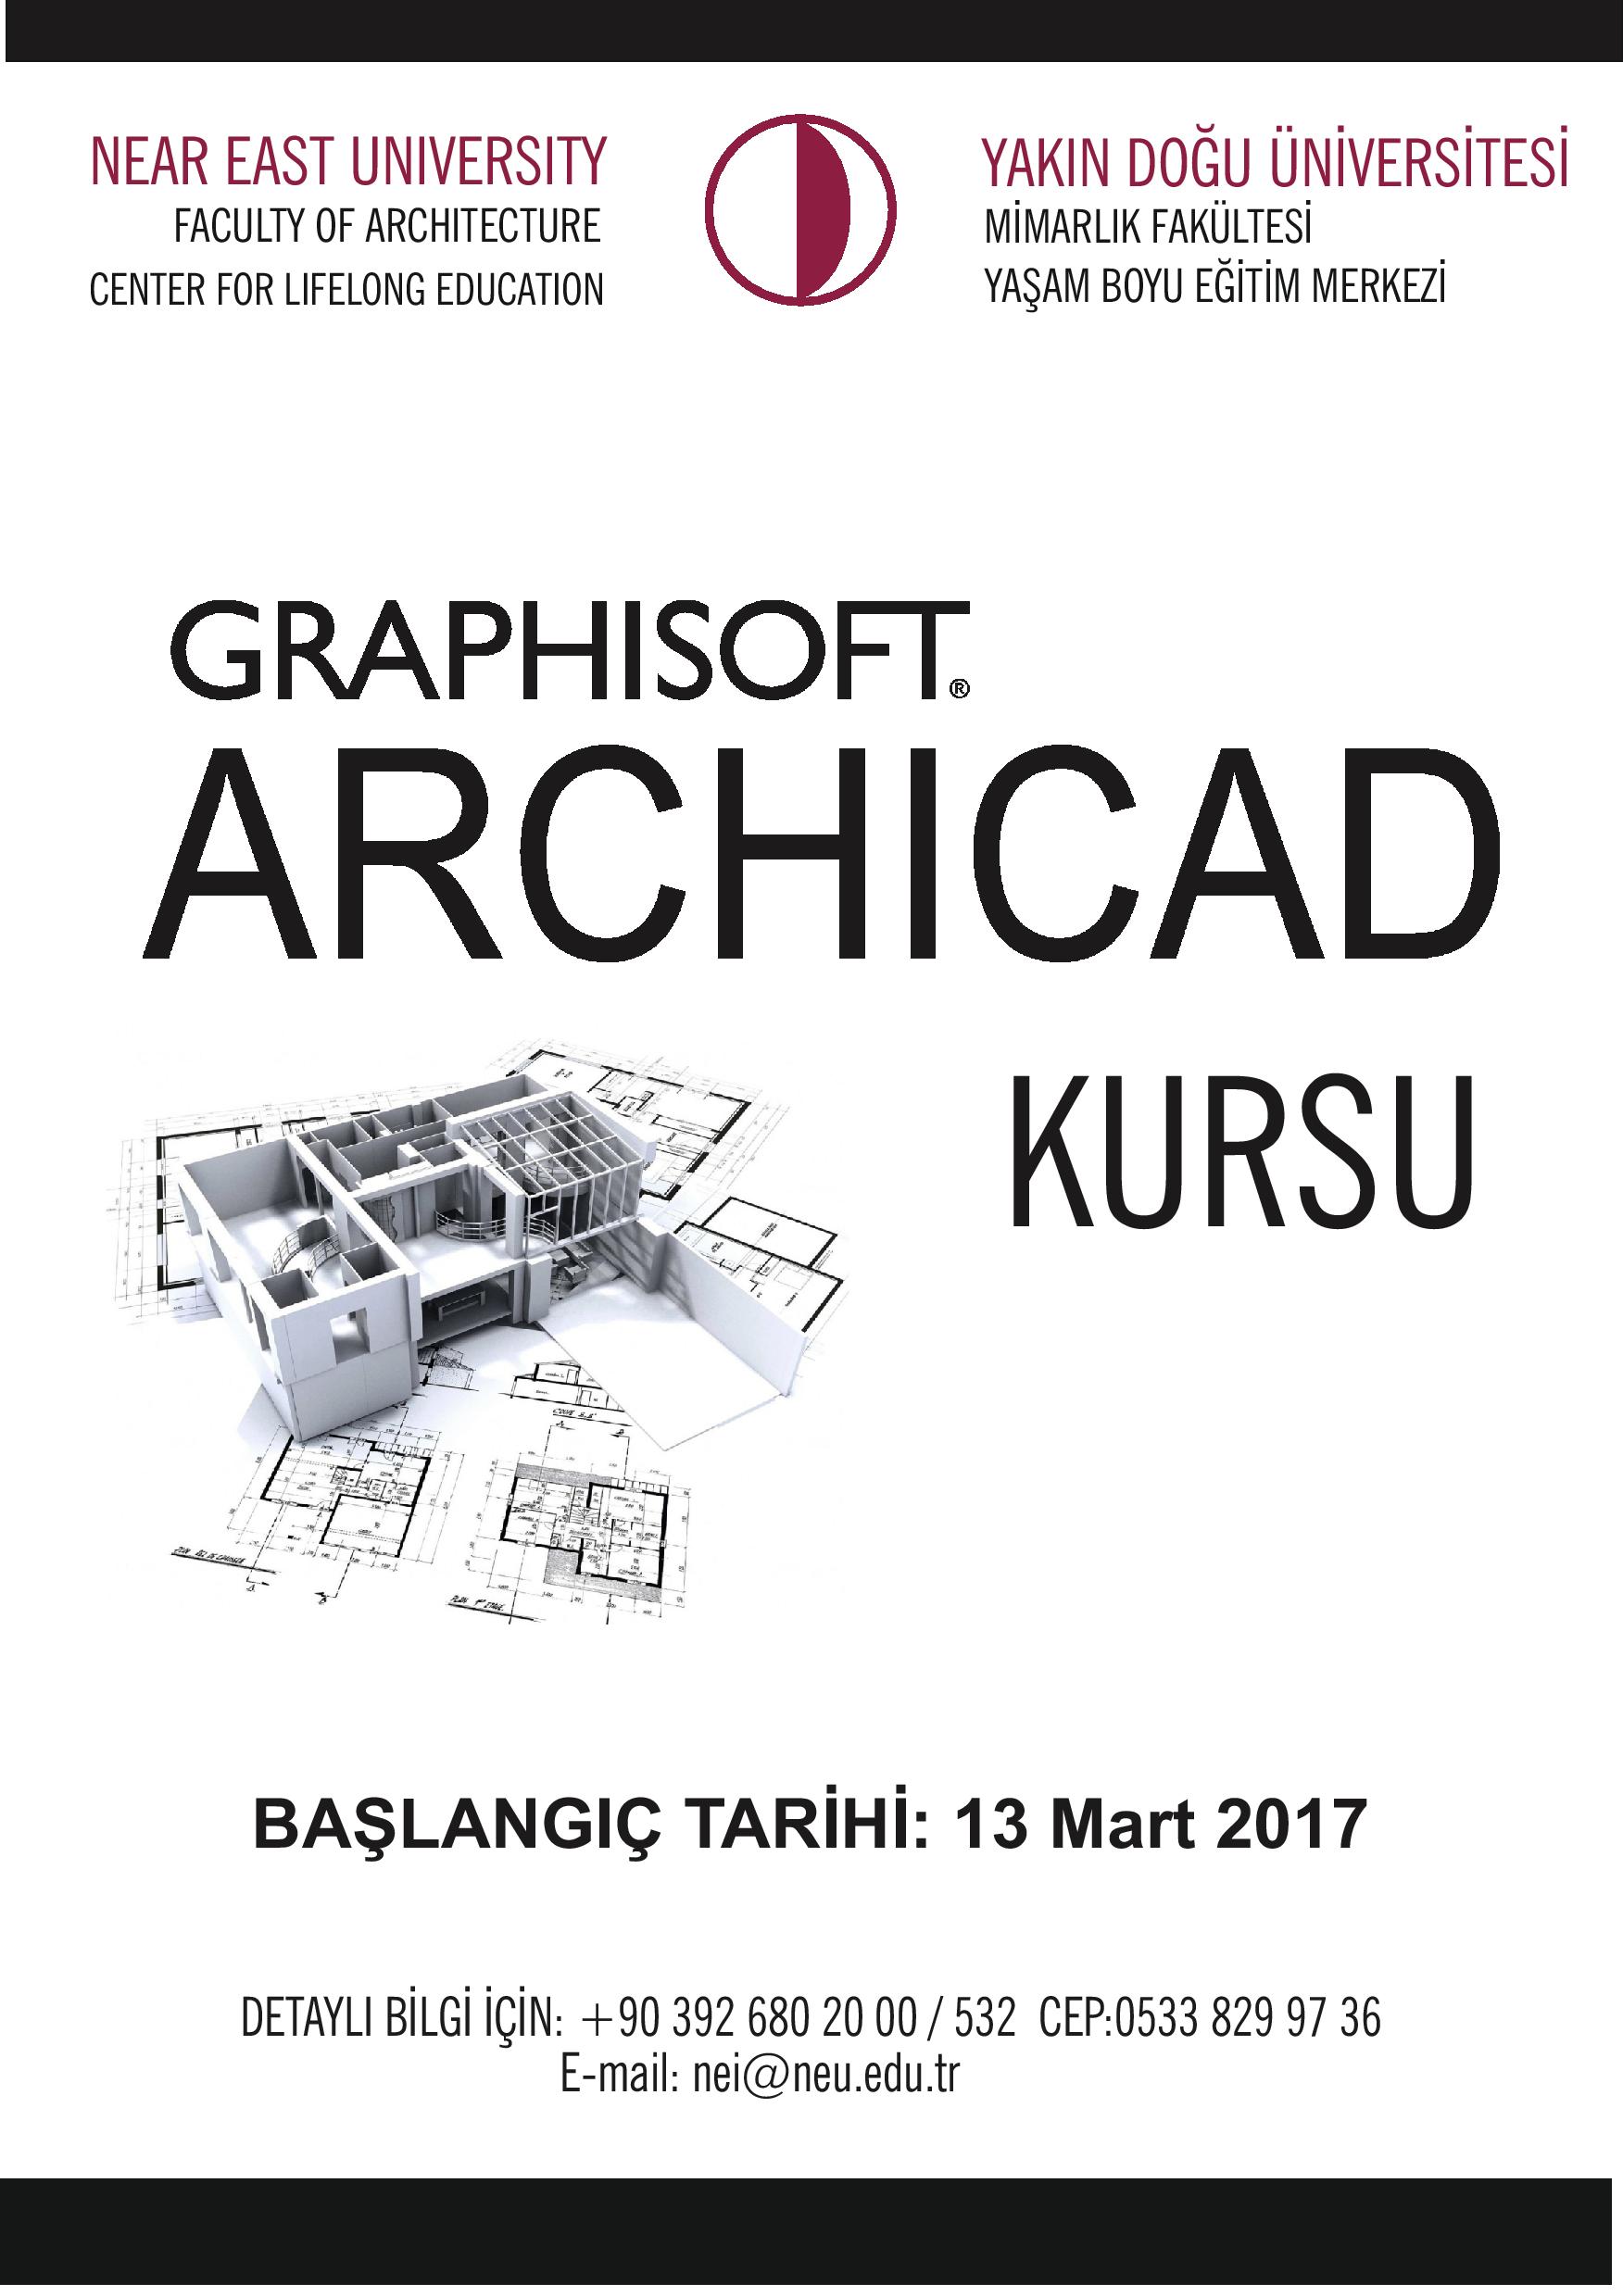 Yakın Doğu Üniversitesinde Autocad ve Graphisoft Archicad  Ile Artlantis Kursları 13 Mart’ta Başlıyor